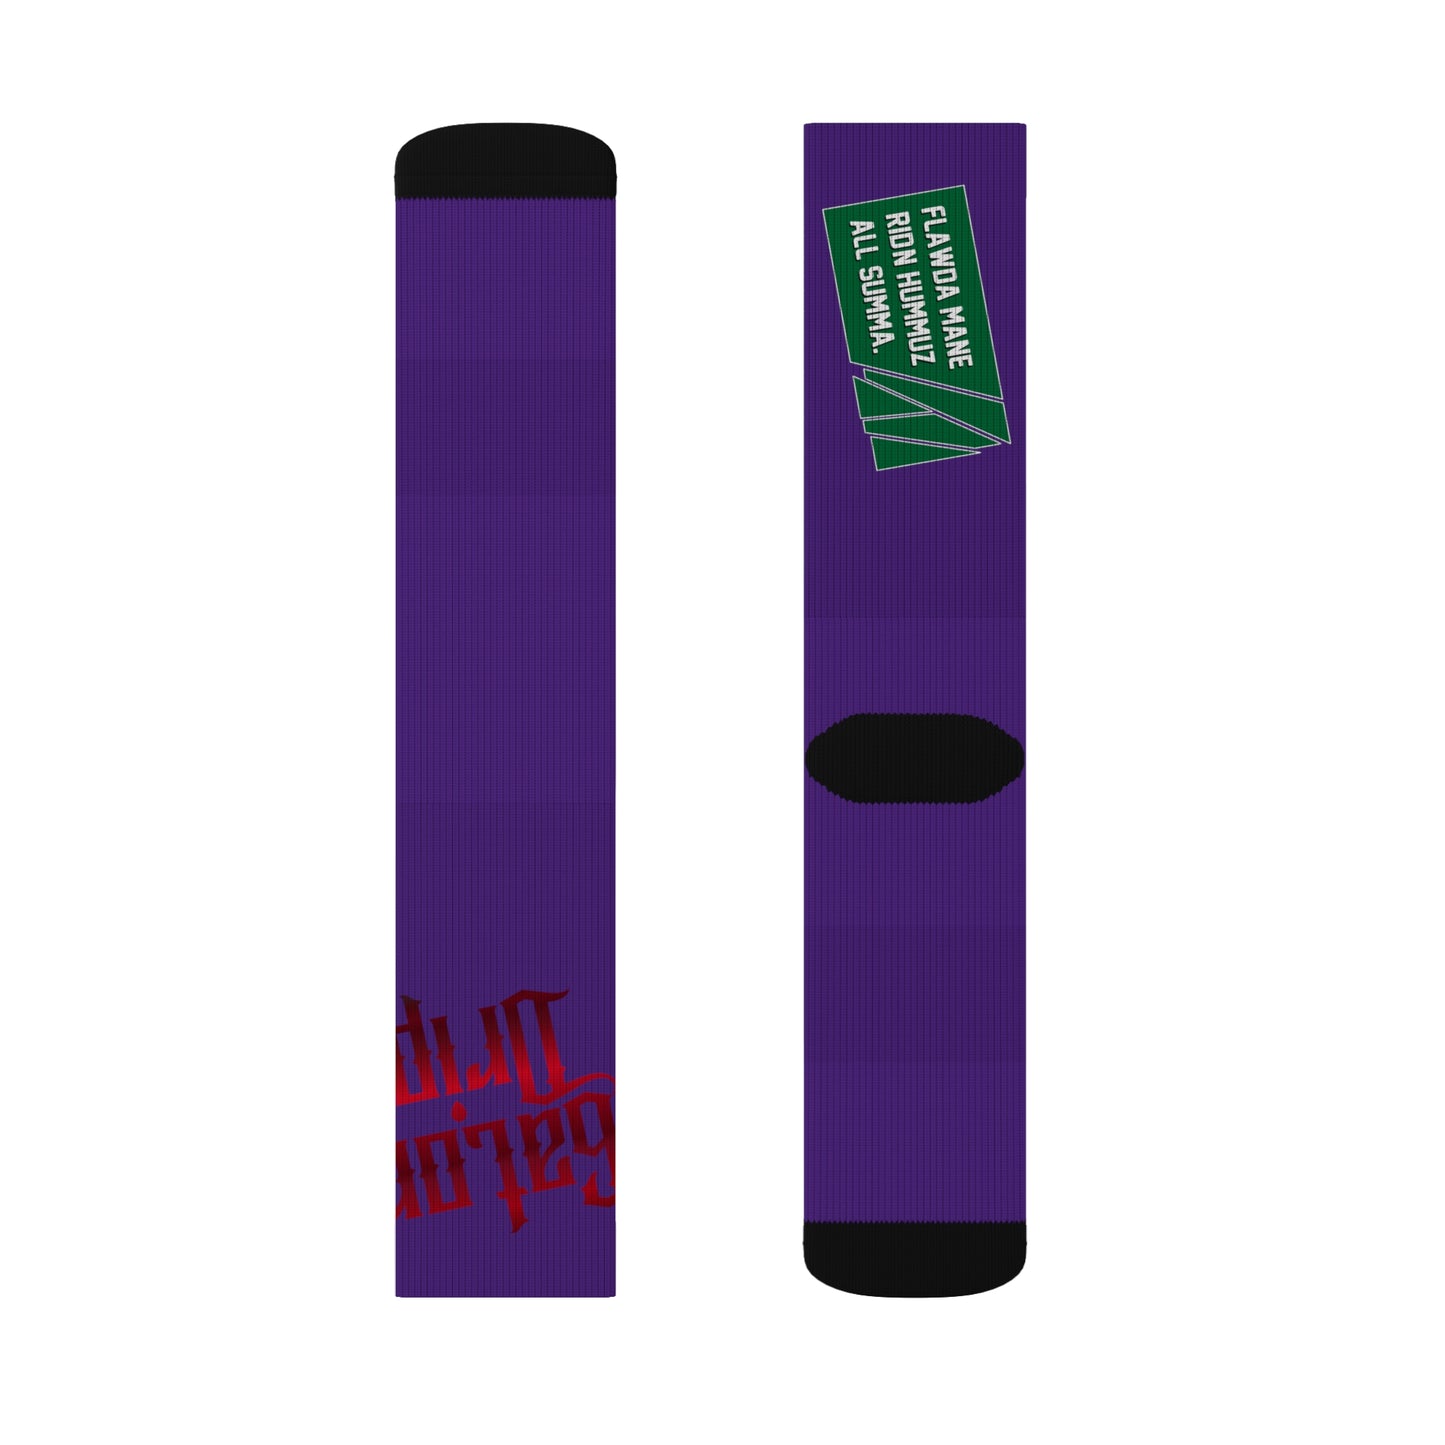 Purple Gator Drip Supa-Heavy Excess-Stunna Hypa-Flex Limited Edition OG Flawda Mane “Flawda Mane Ridn Hummuz All Summa.” Medium Playuz Socks